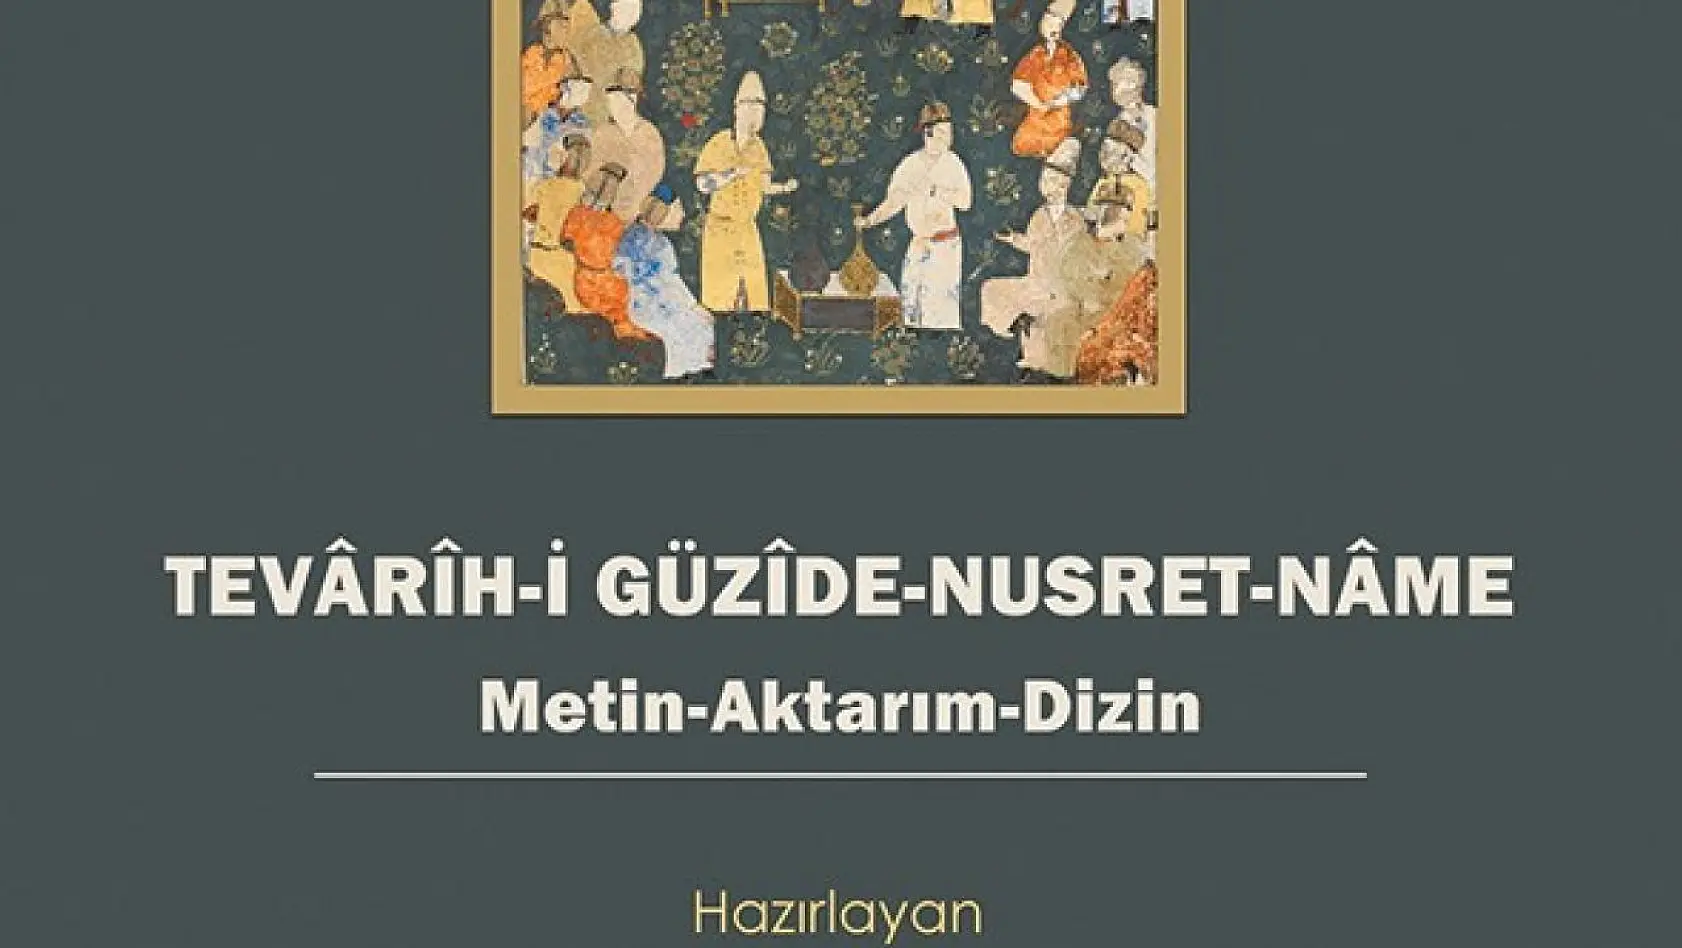 ADÜ Öğretim Üyesi Kaya'nın kitabı Türk-Moğol tarihi çalışmalarına yeni bakış kazandıracak